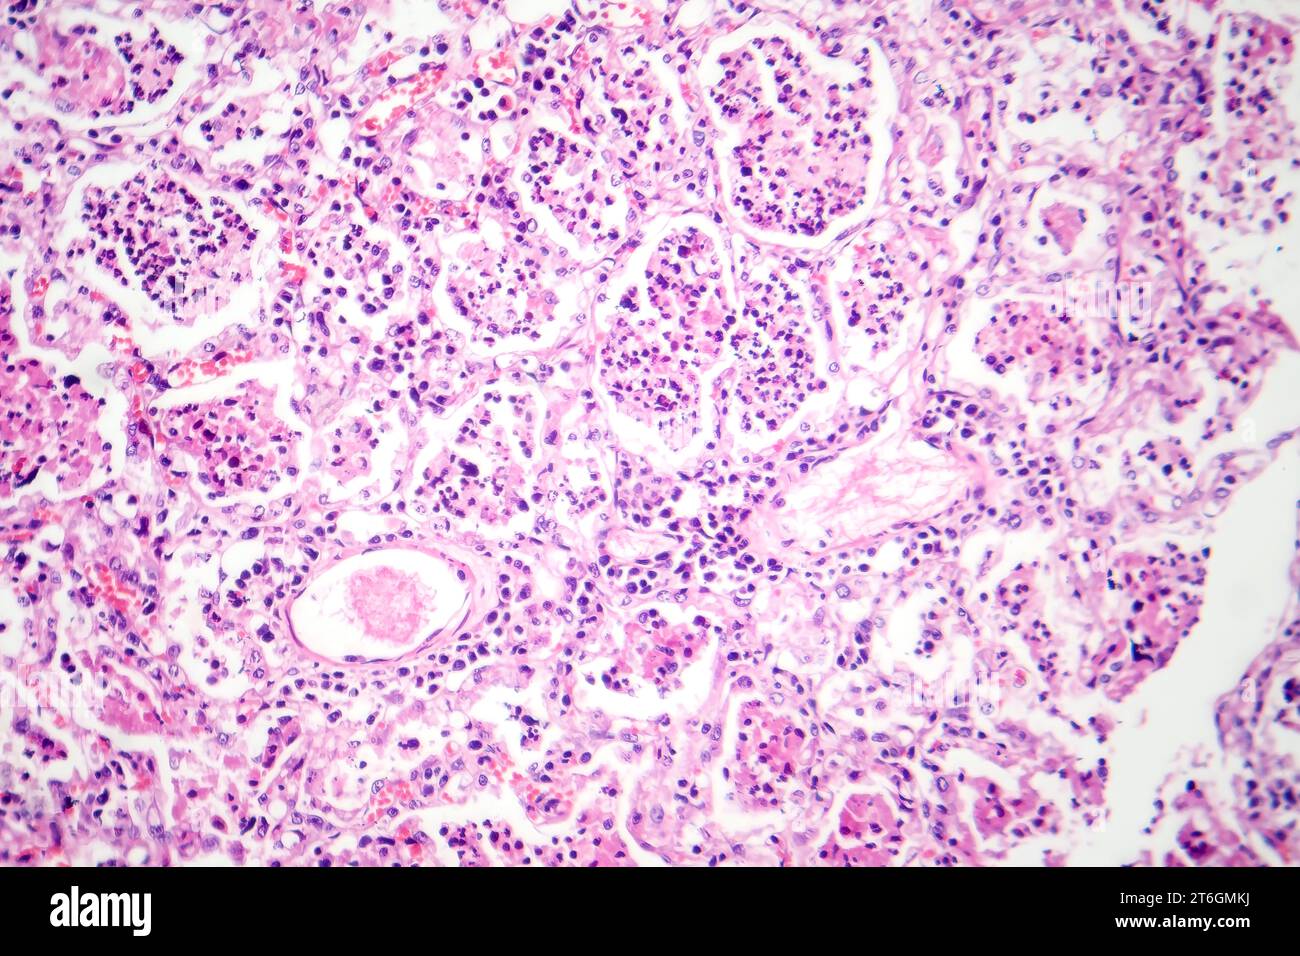 Fotomicrografia della polmonite lobare in fase epatica rossa, che mostra tessuto polmonare infiammato con epatite rossa caratteristica della malattia. Foto Stock